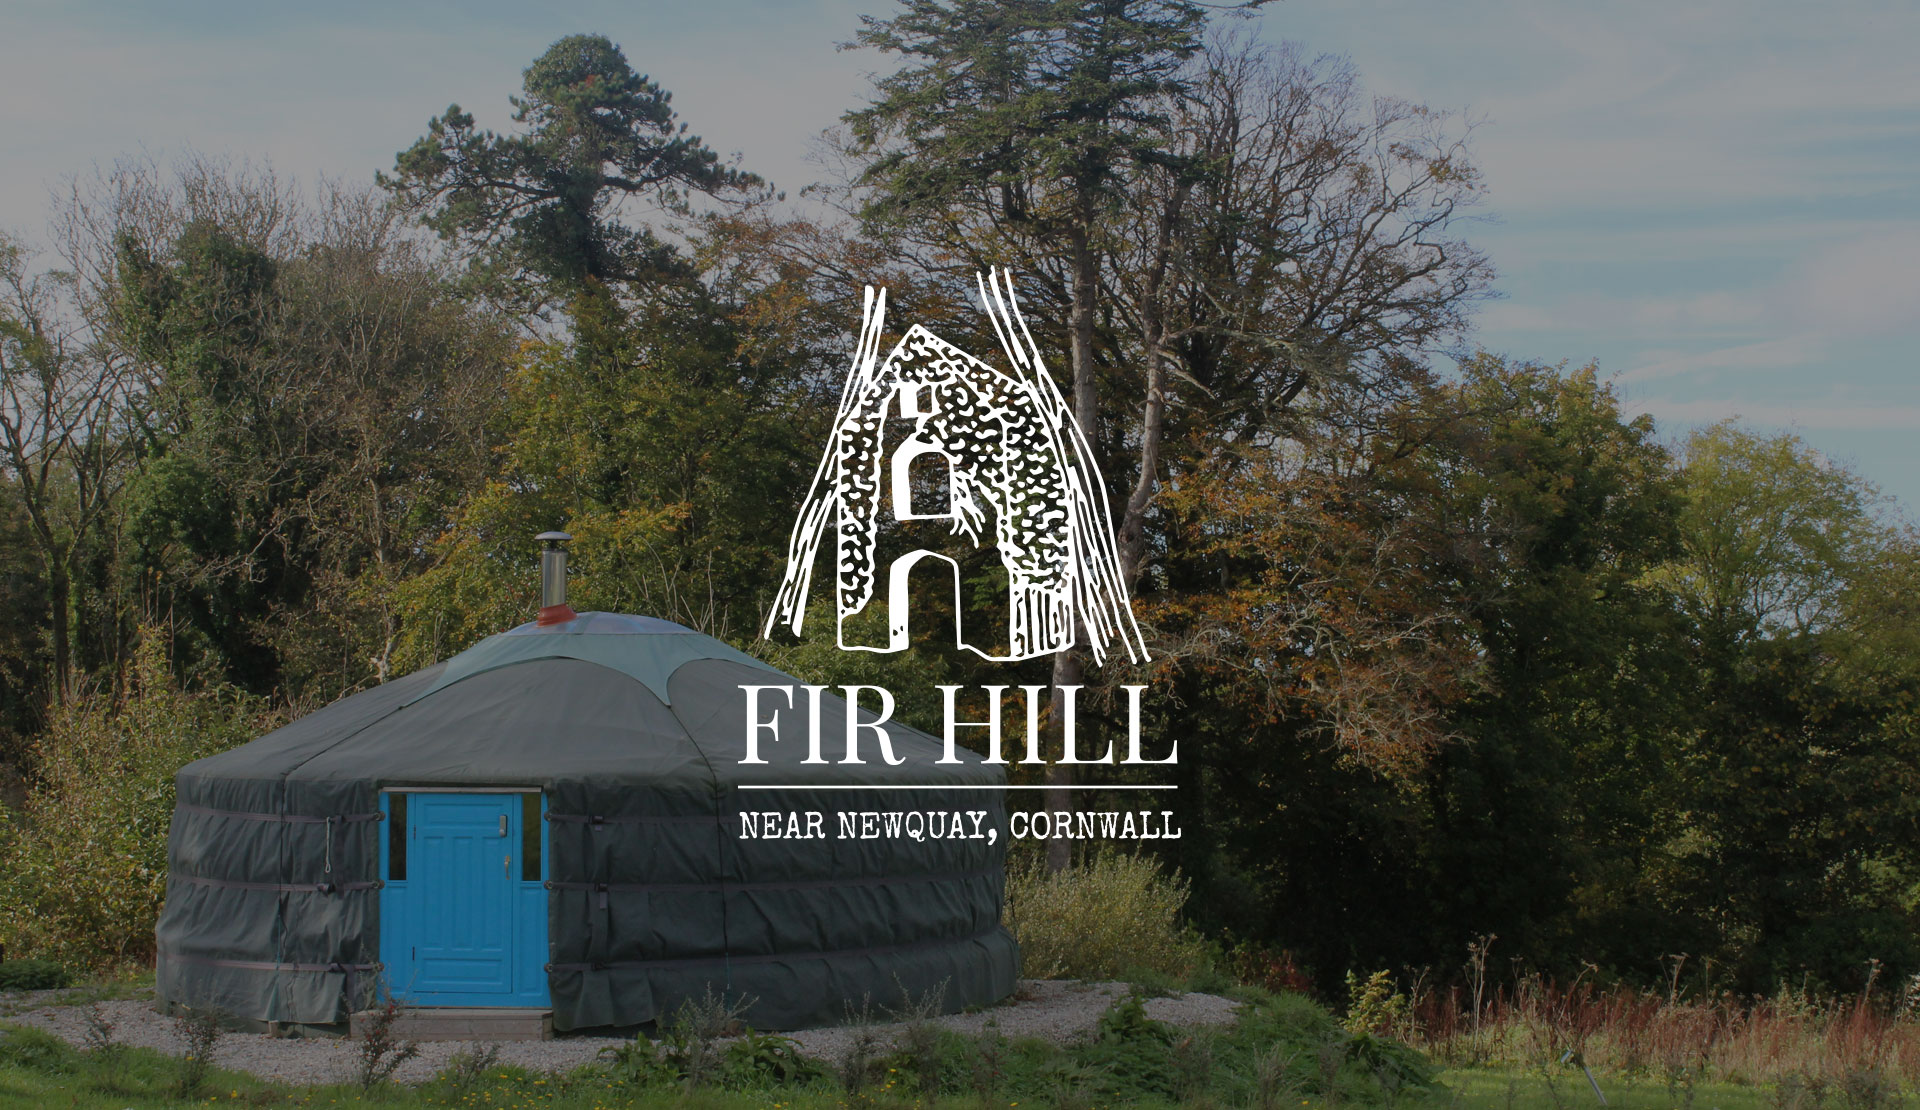 The Fir Hill